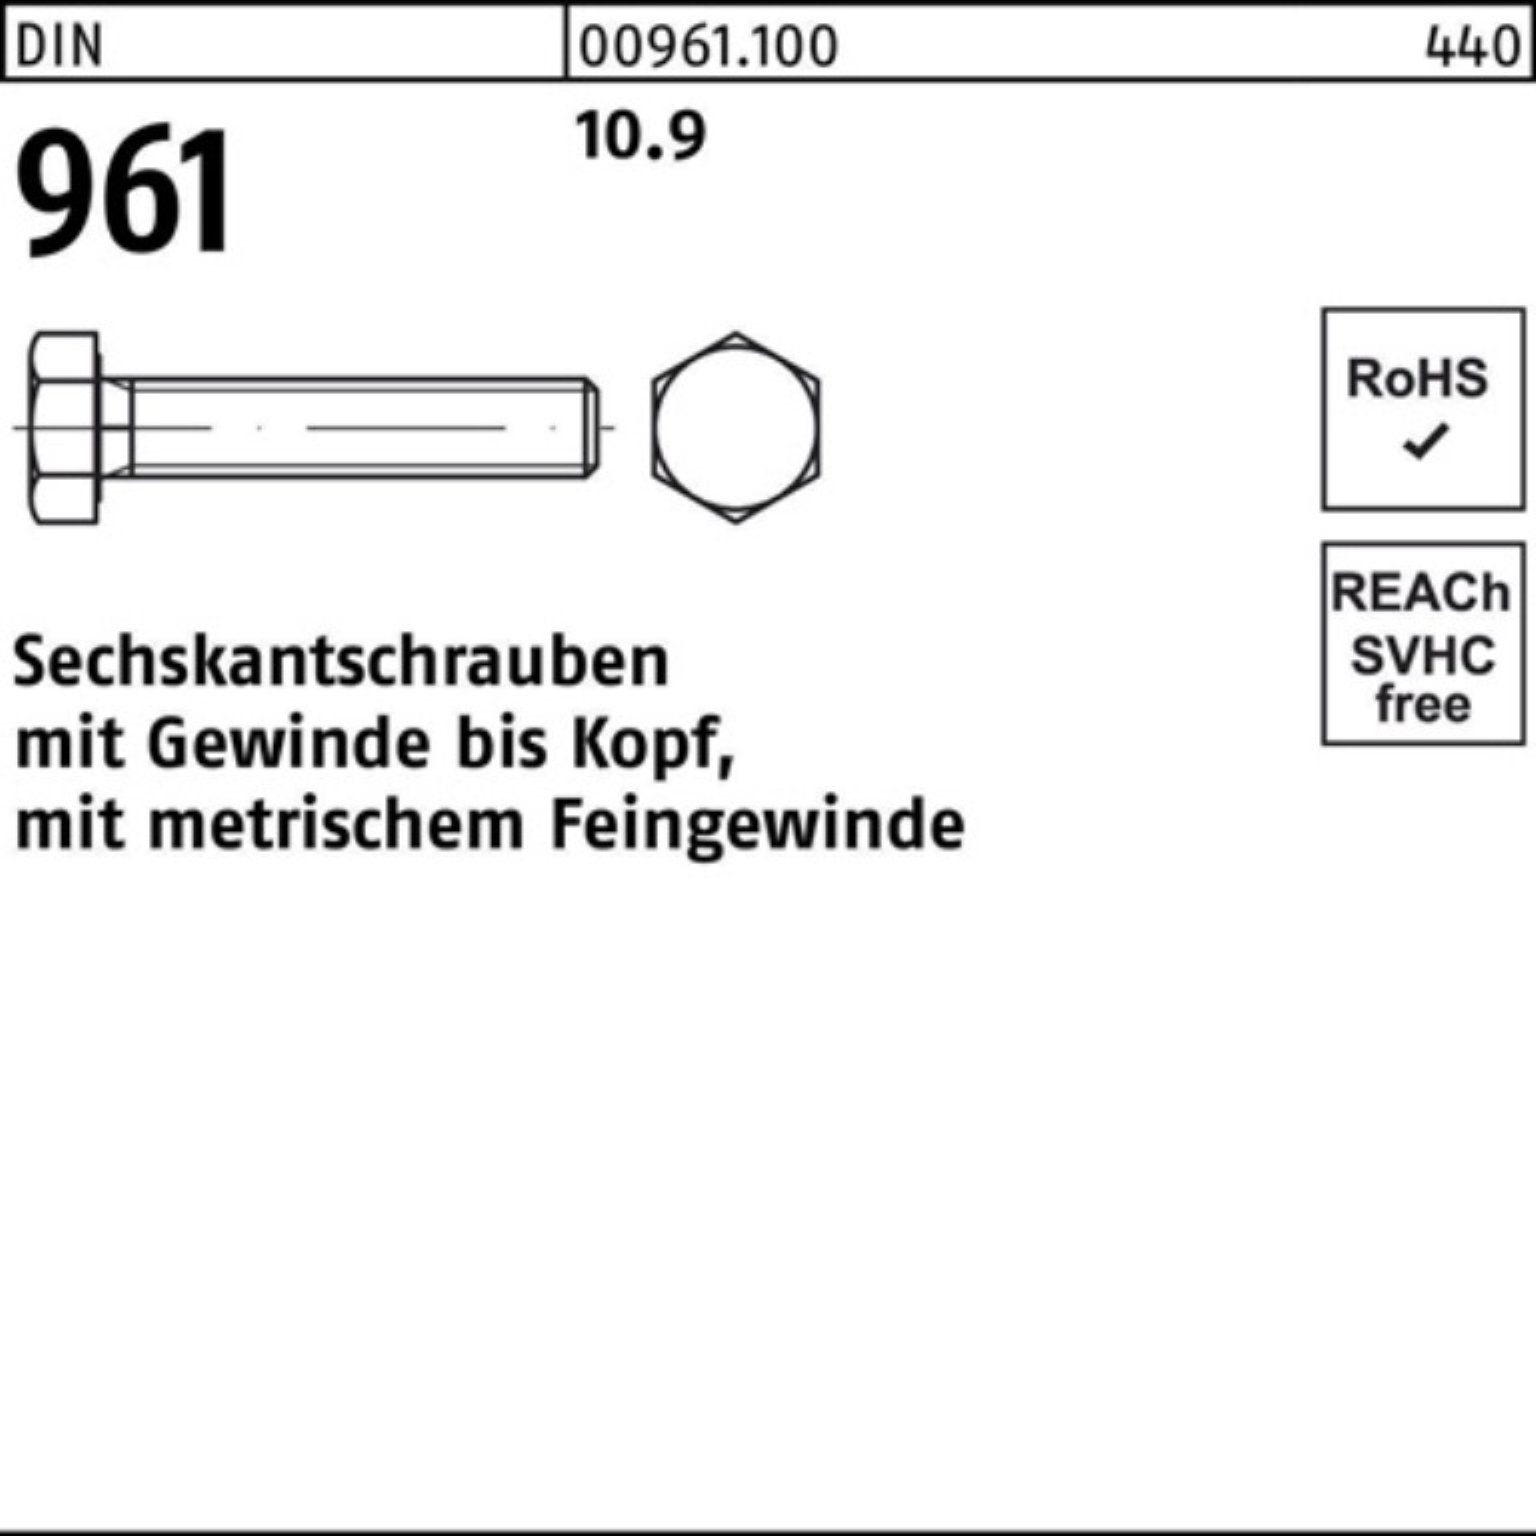 Bestseller-Informationen! Reyher Sechskantschraube 100er Pack Sechskantschraube Stück 10.9 10 DIN VG 961 M24x1,5x120 DIN